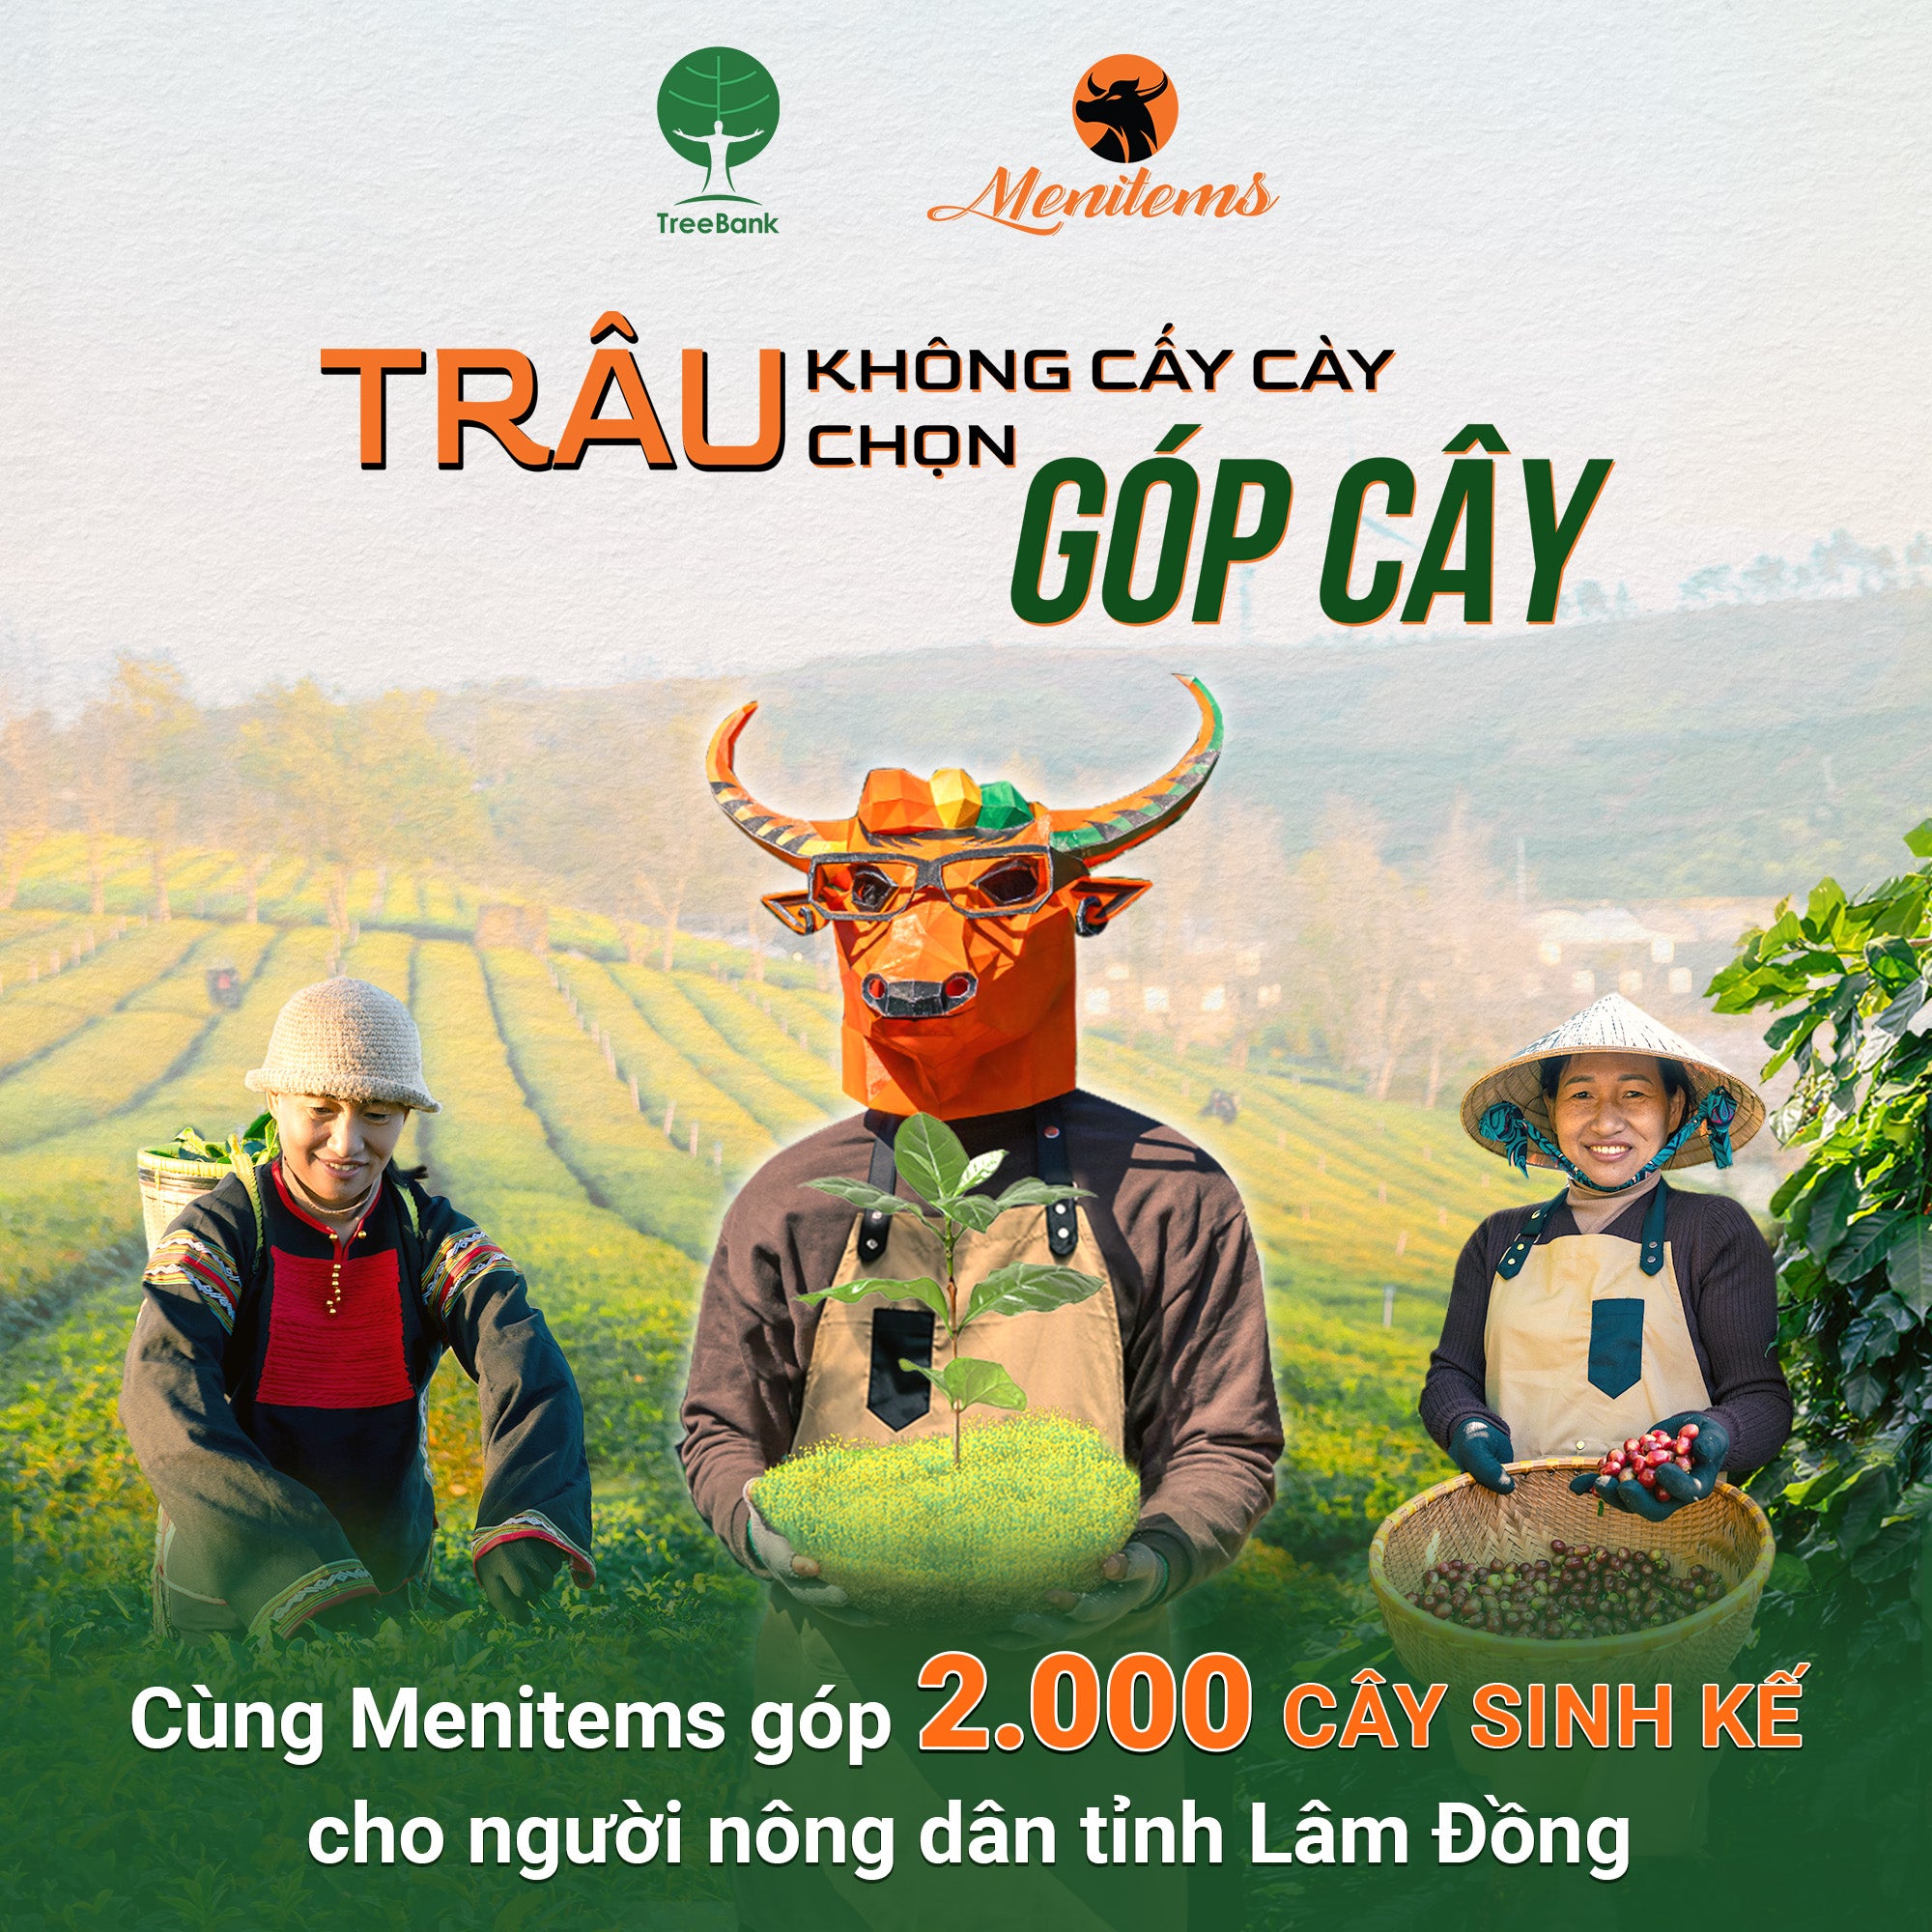 “TRÂU KHÔNG CẤY CÀY - TRÂU CHỌN GÓP CÂY” - Mentiems đồng hành cùng TreeBank góp 2,000 cây sinh kế cho người dân Lâm Đồng